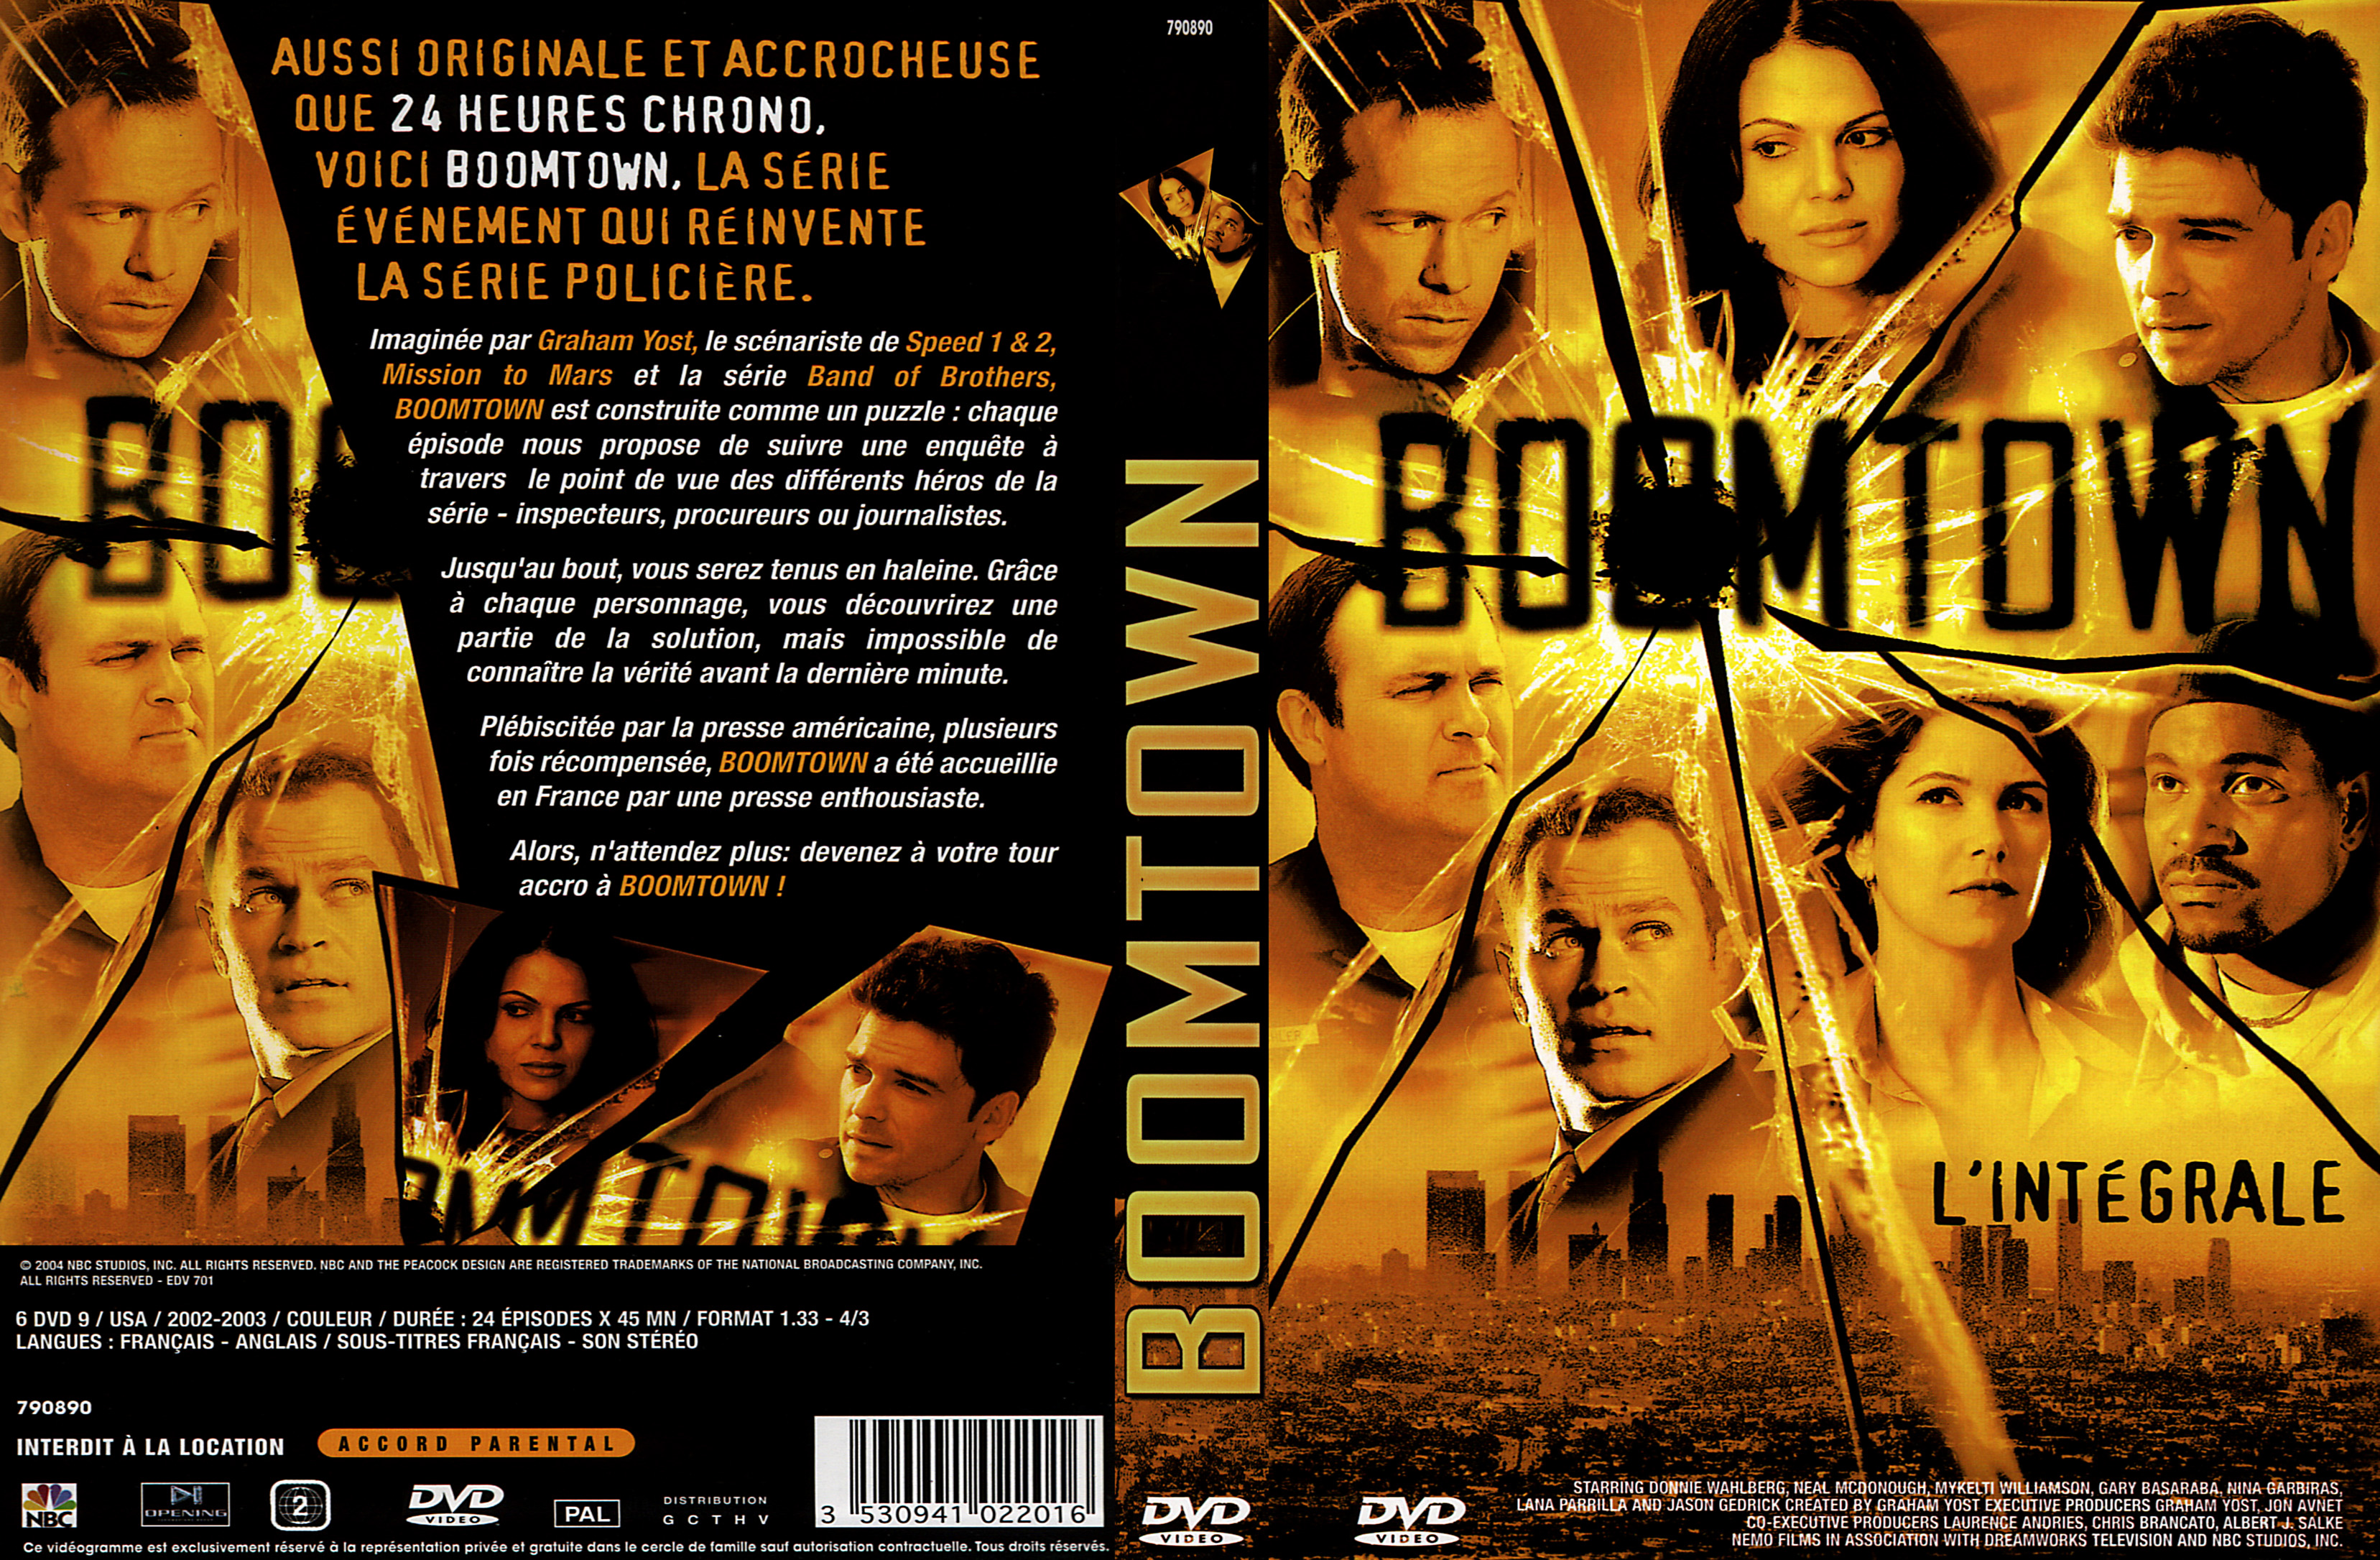 Jaquette DVD Boomtown Saison 1 COFFRET